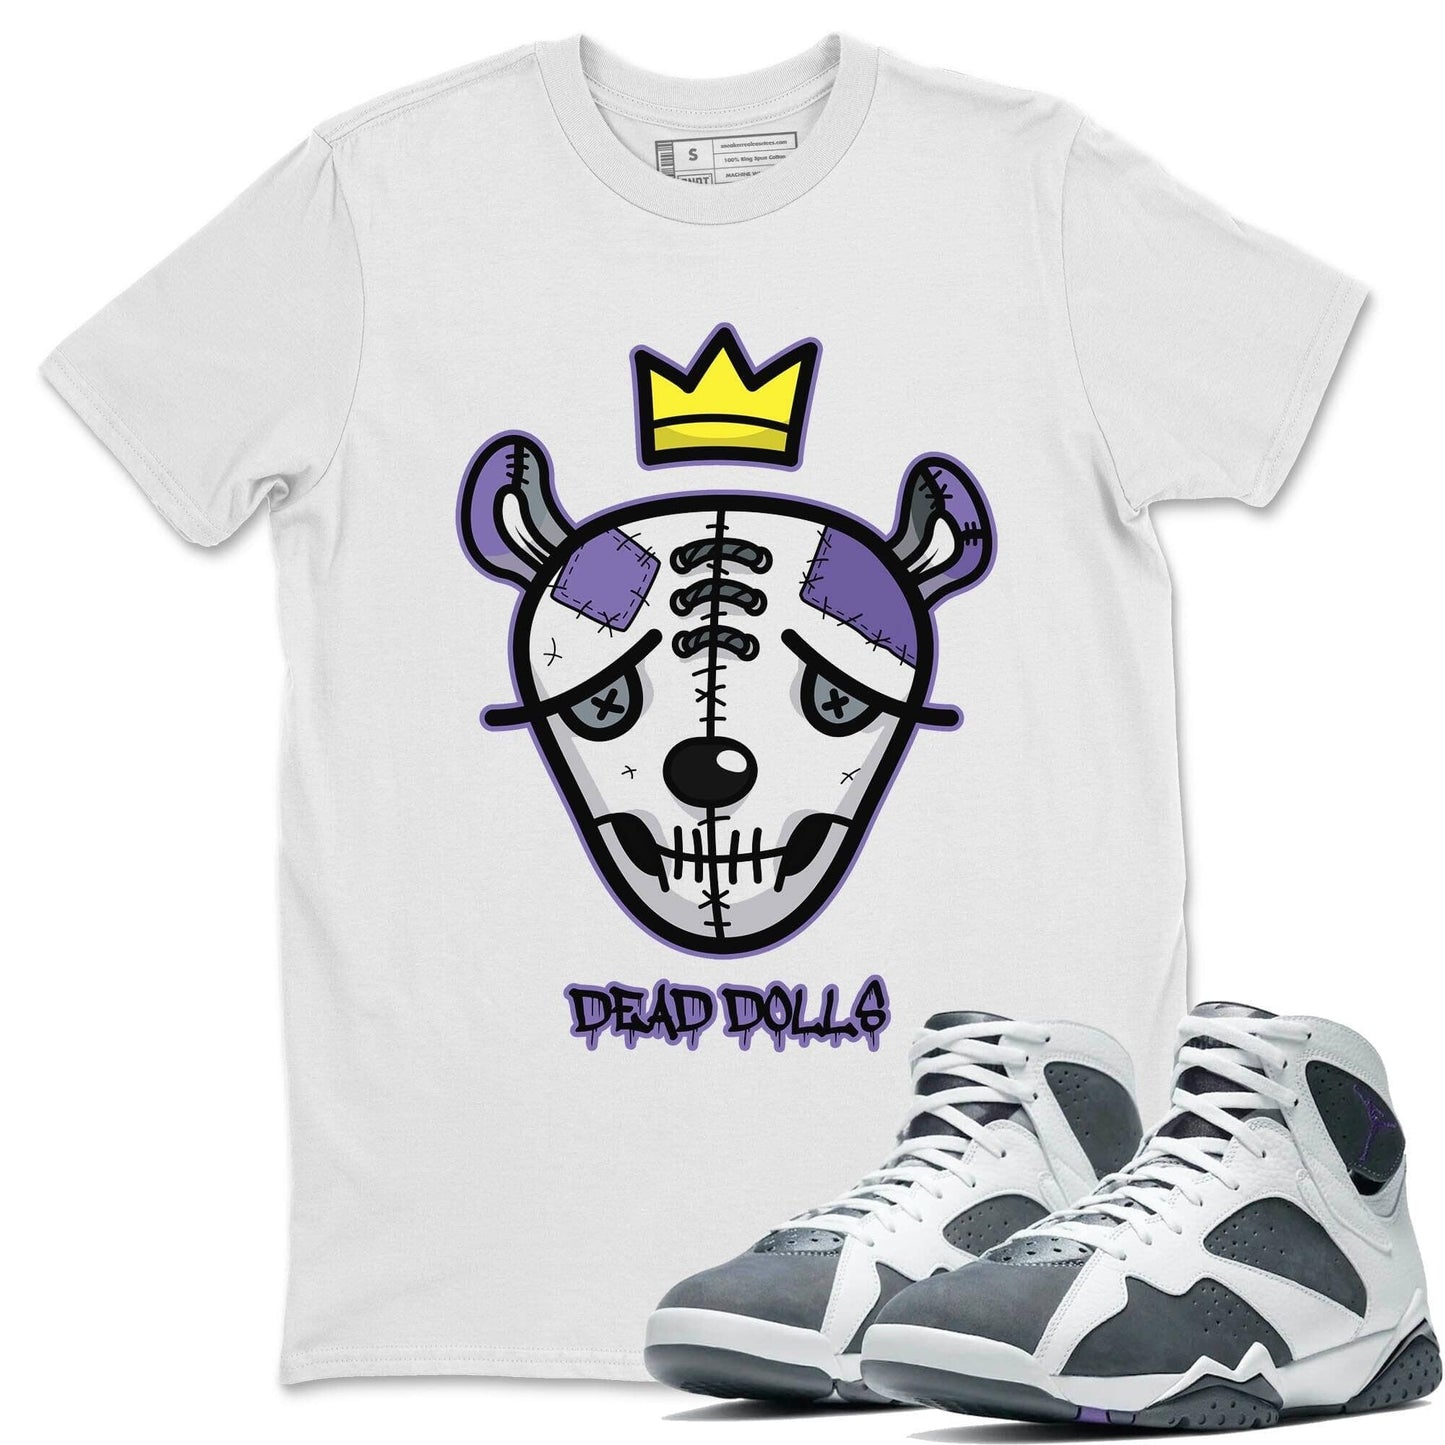 Jordan 7 Flint Shirt To Match Jordans Dead Dolls Face Sneaker Tees Jordan 7 Flint Drip Gear Zone Sneaker Matching Clothing Unisex Shirts